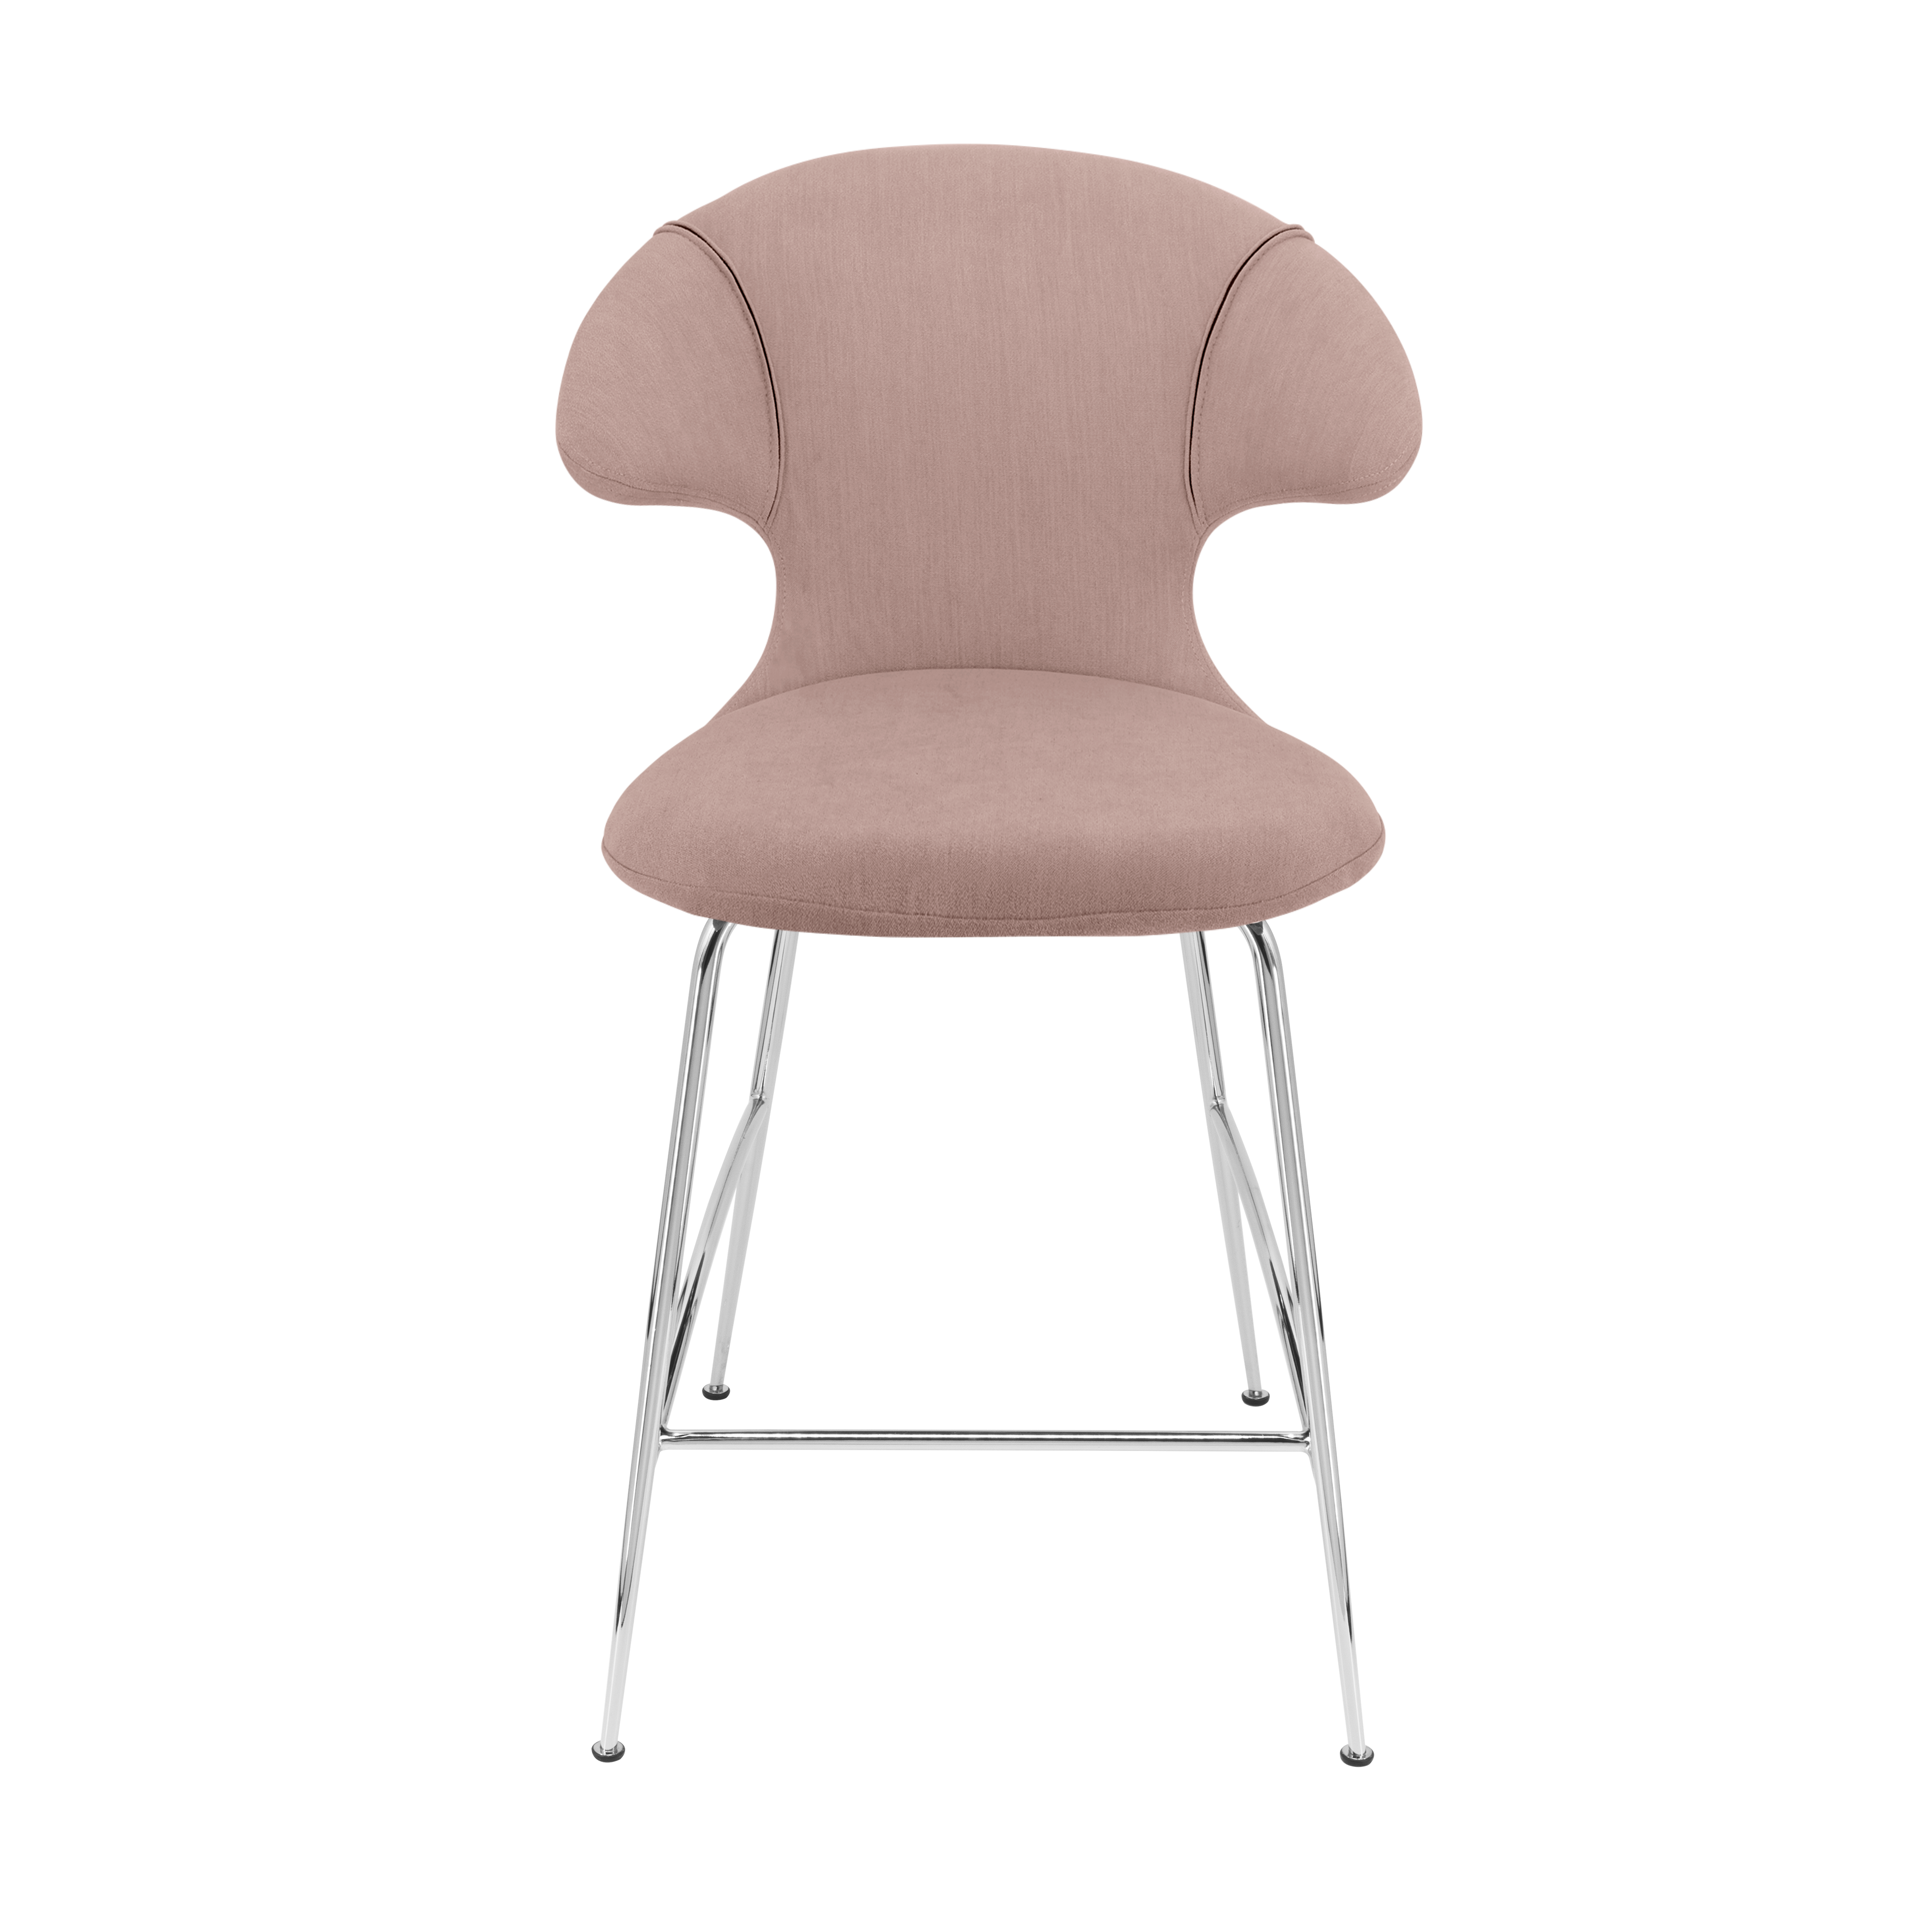 Time Flies Counter Stuhl in Stone Rose präsentiert im Onlineshop von KAQTU Design AG. Barstuhl mit Armlehne ist von Umage